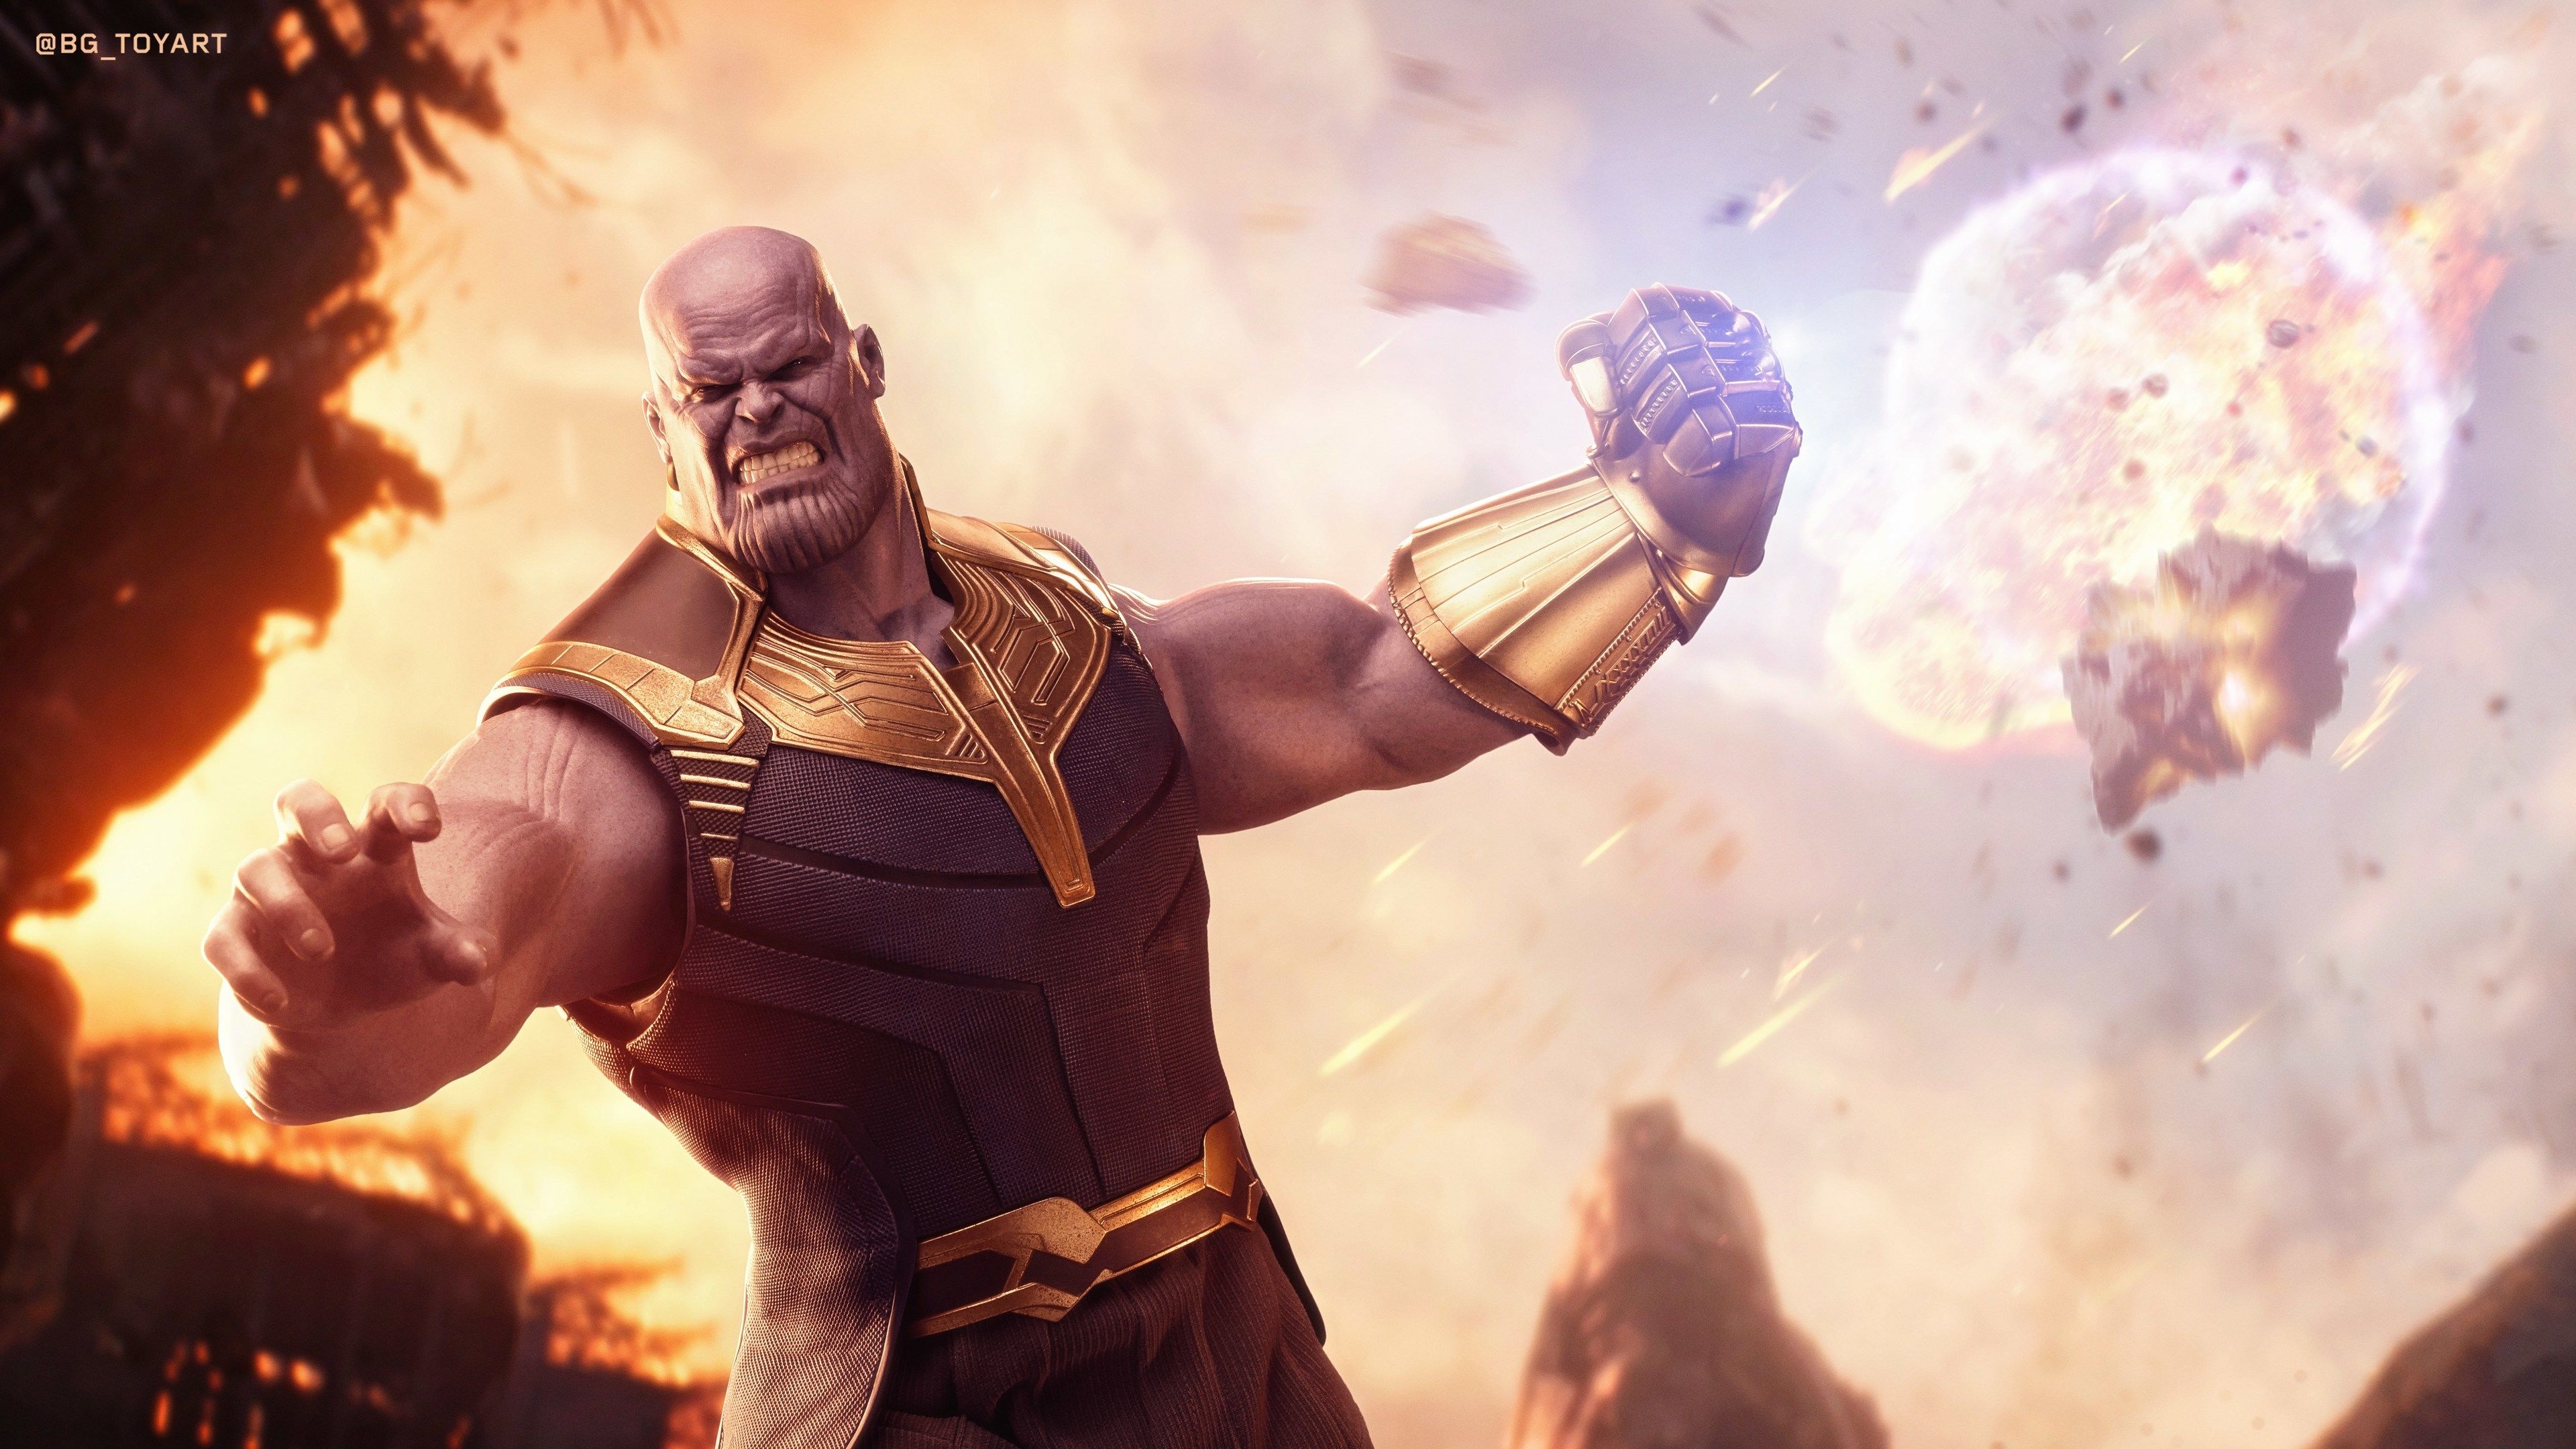 Wallpaper 4k Thanos Avengers Infinity War 4k 4k Wallpaper, 5k